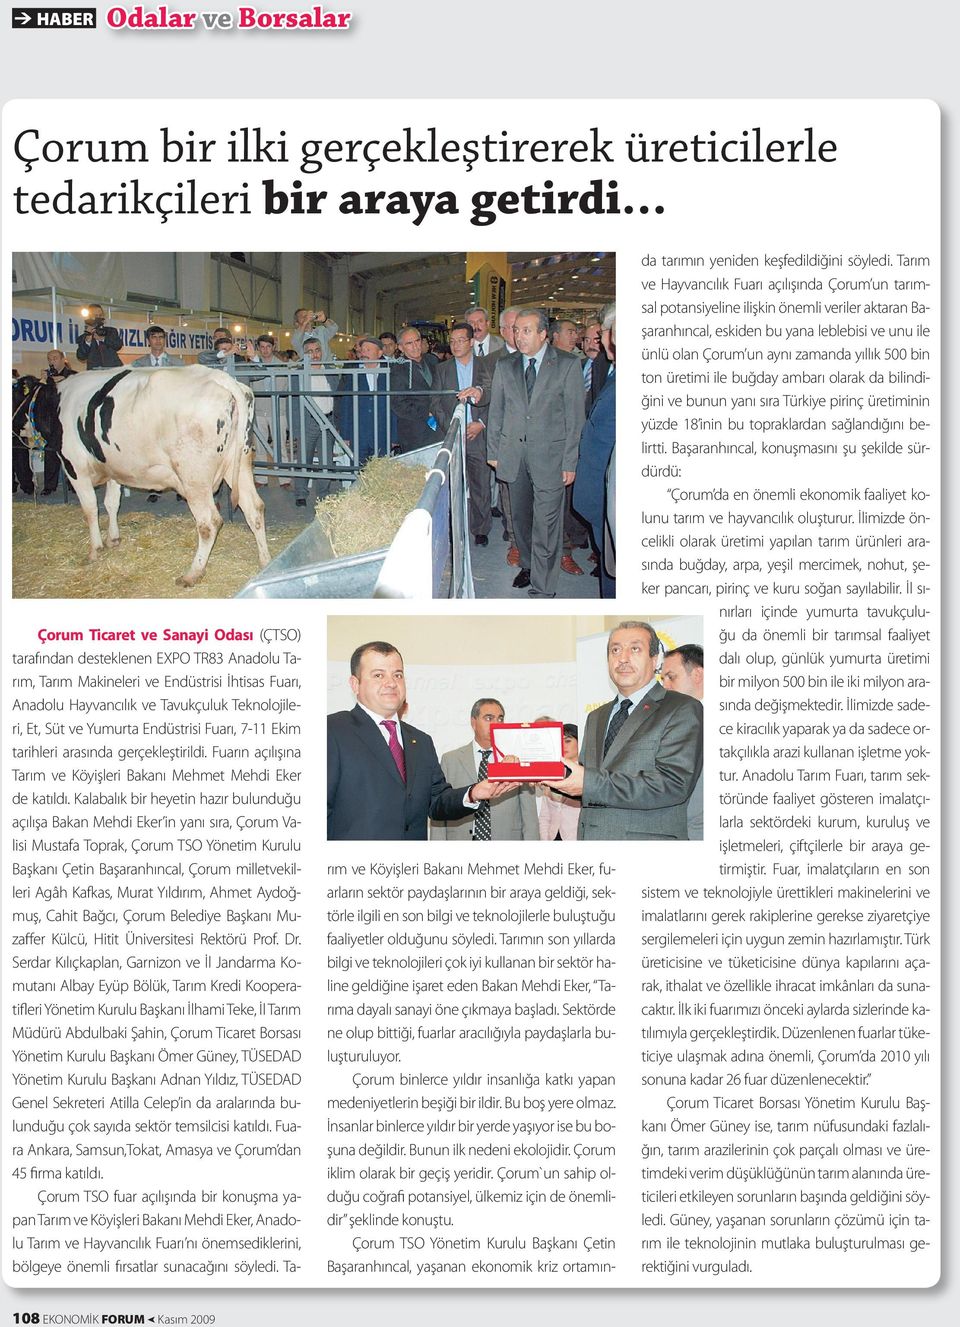 Fuarın açılışına Tarım ve Köyişleri Bakanı Mehmet Mehdi Eker de katıldı.